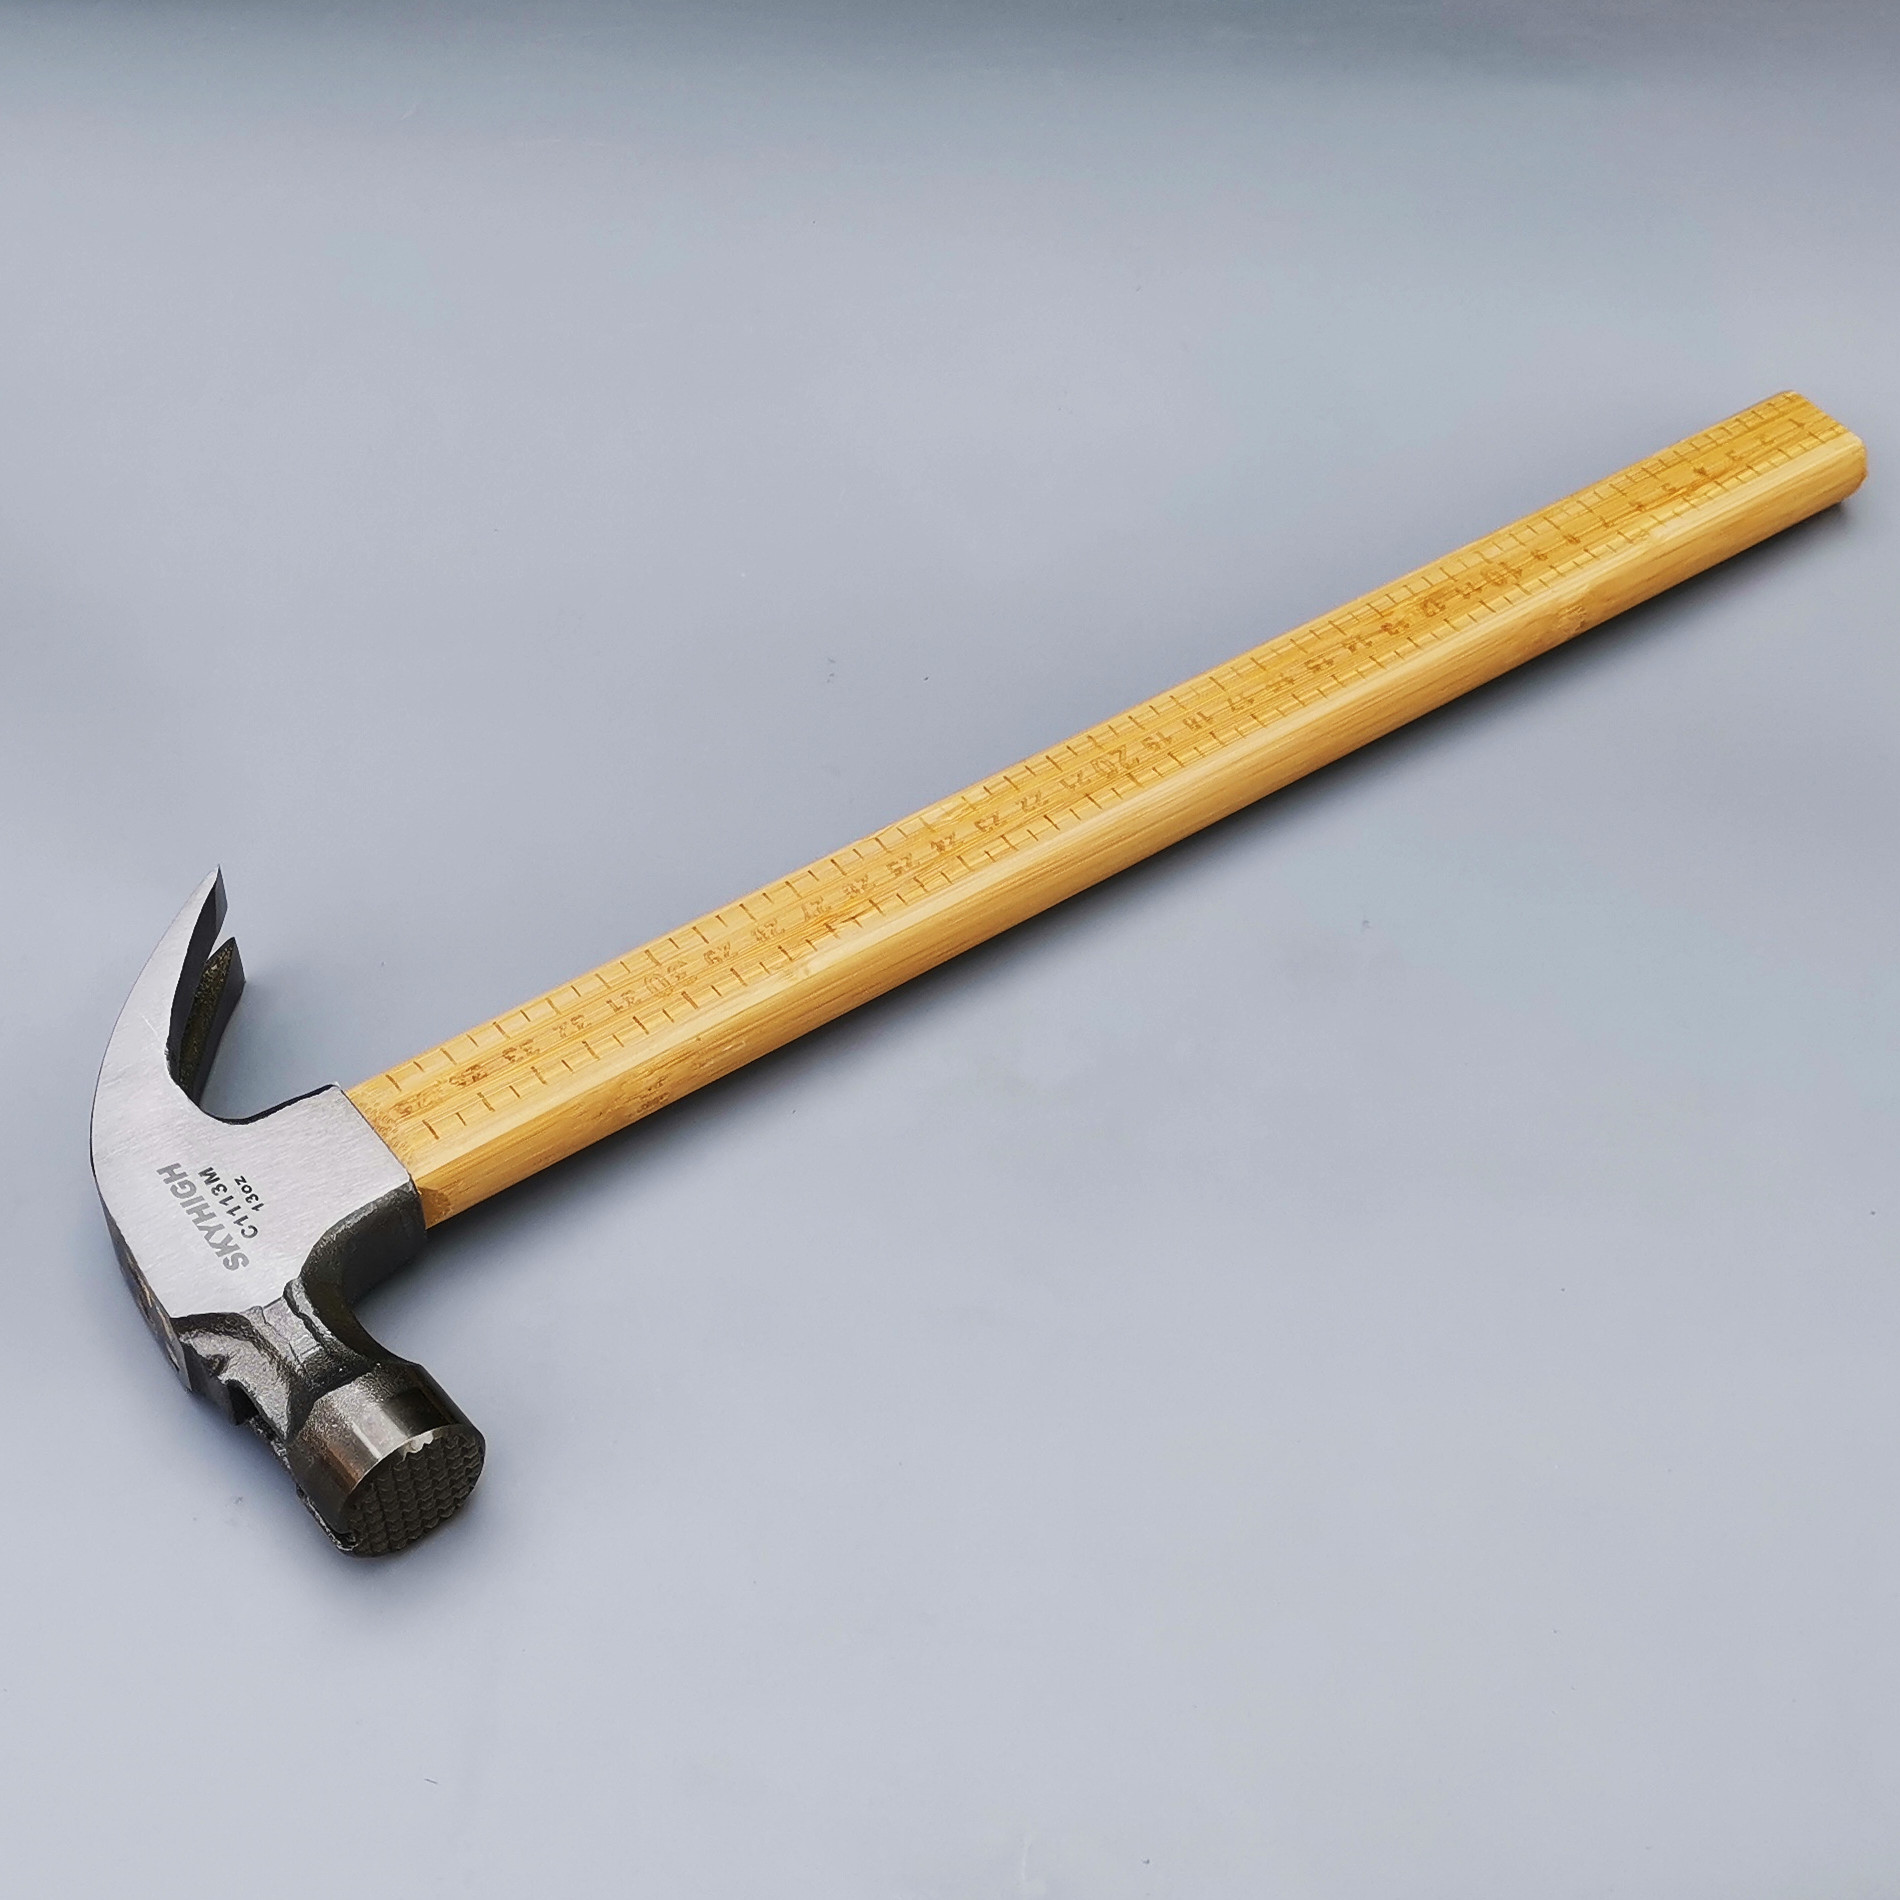 锤子工具澳新羊角锤木工支模高碳钢铁锤竹柄带磁吸钉铁榔头6两8两